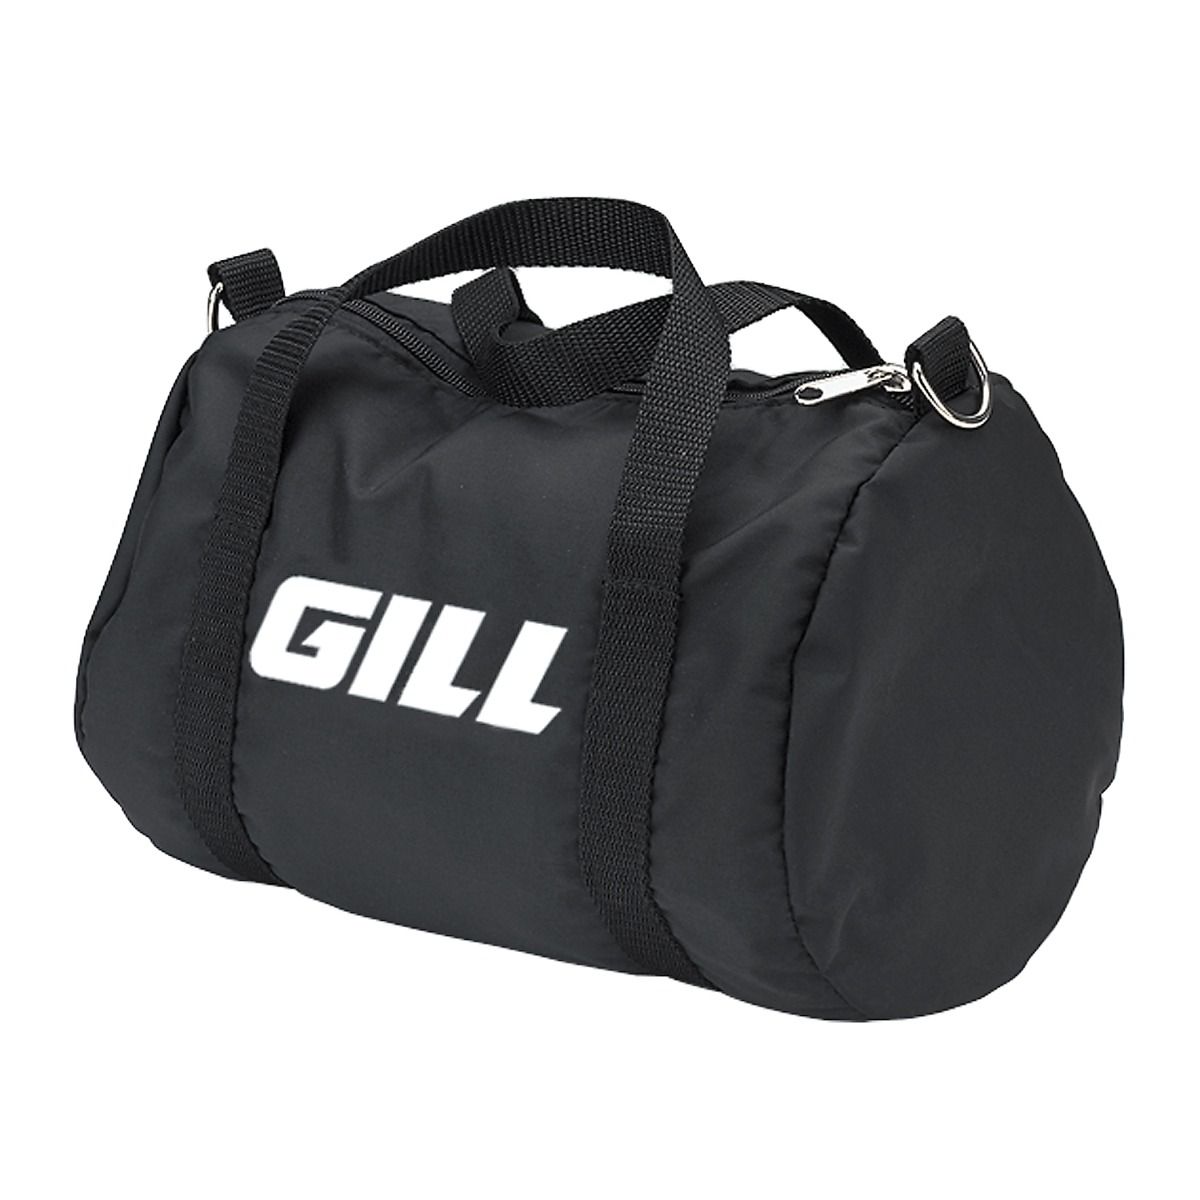 Gill Athletics Track Bag